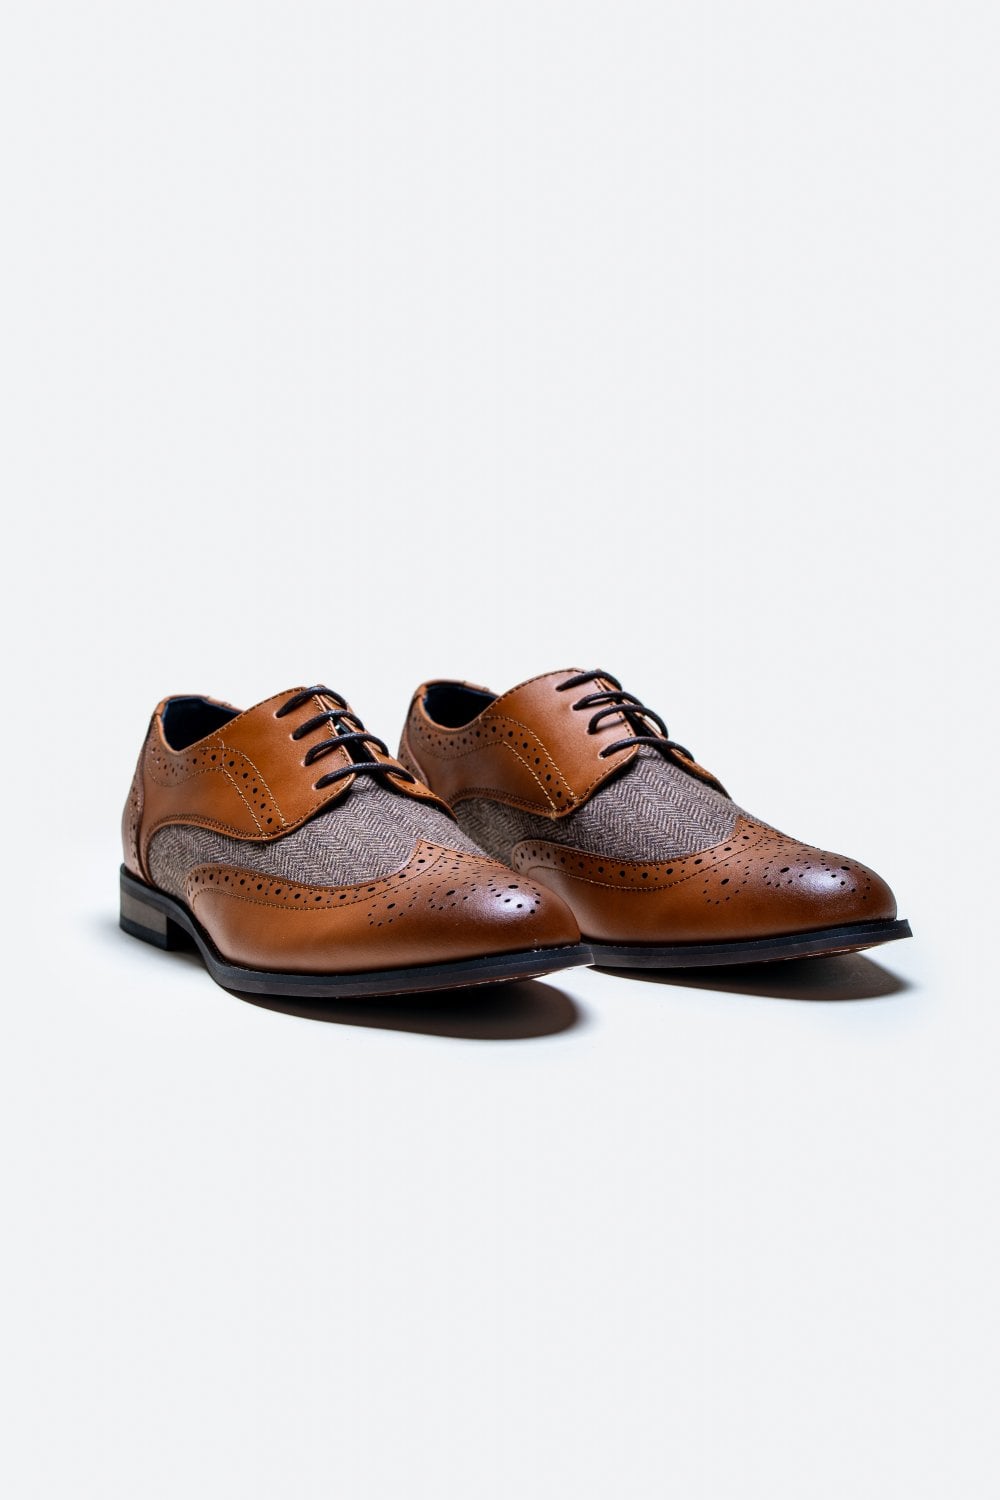 Cavani Oliver Tweed Schoenen - Brown - schoenen